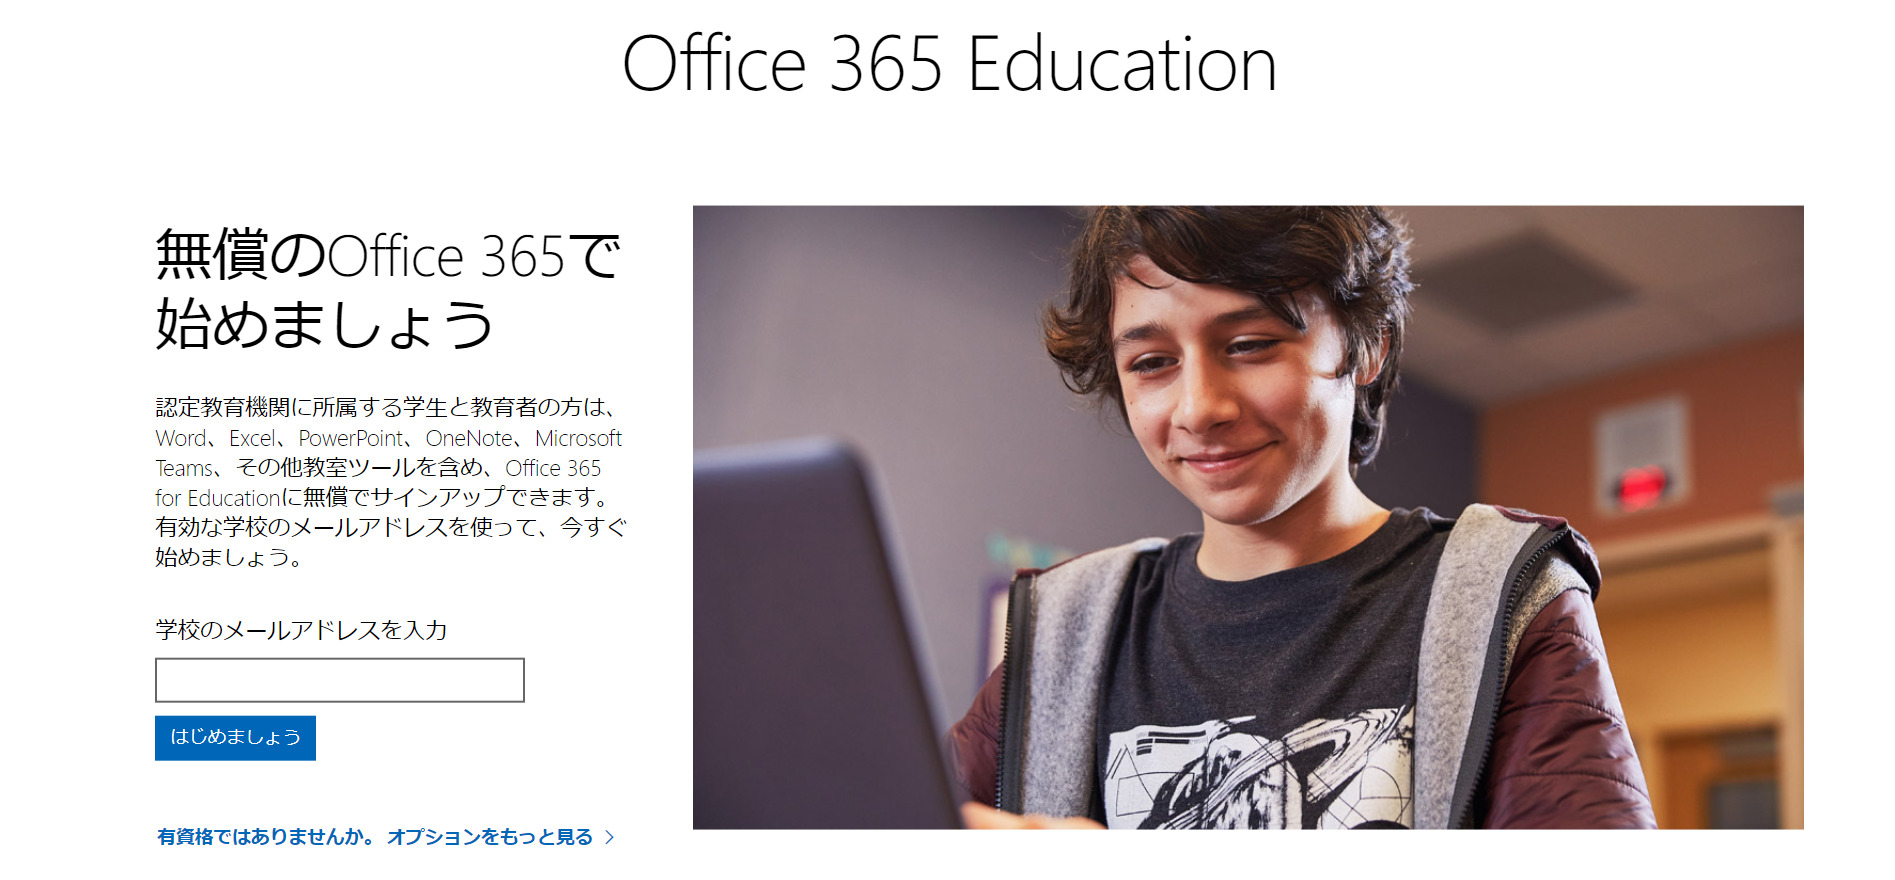 Office 365 Educationのトップページ